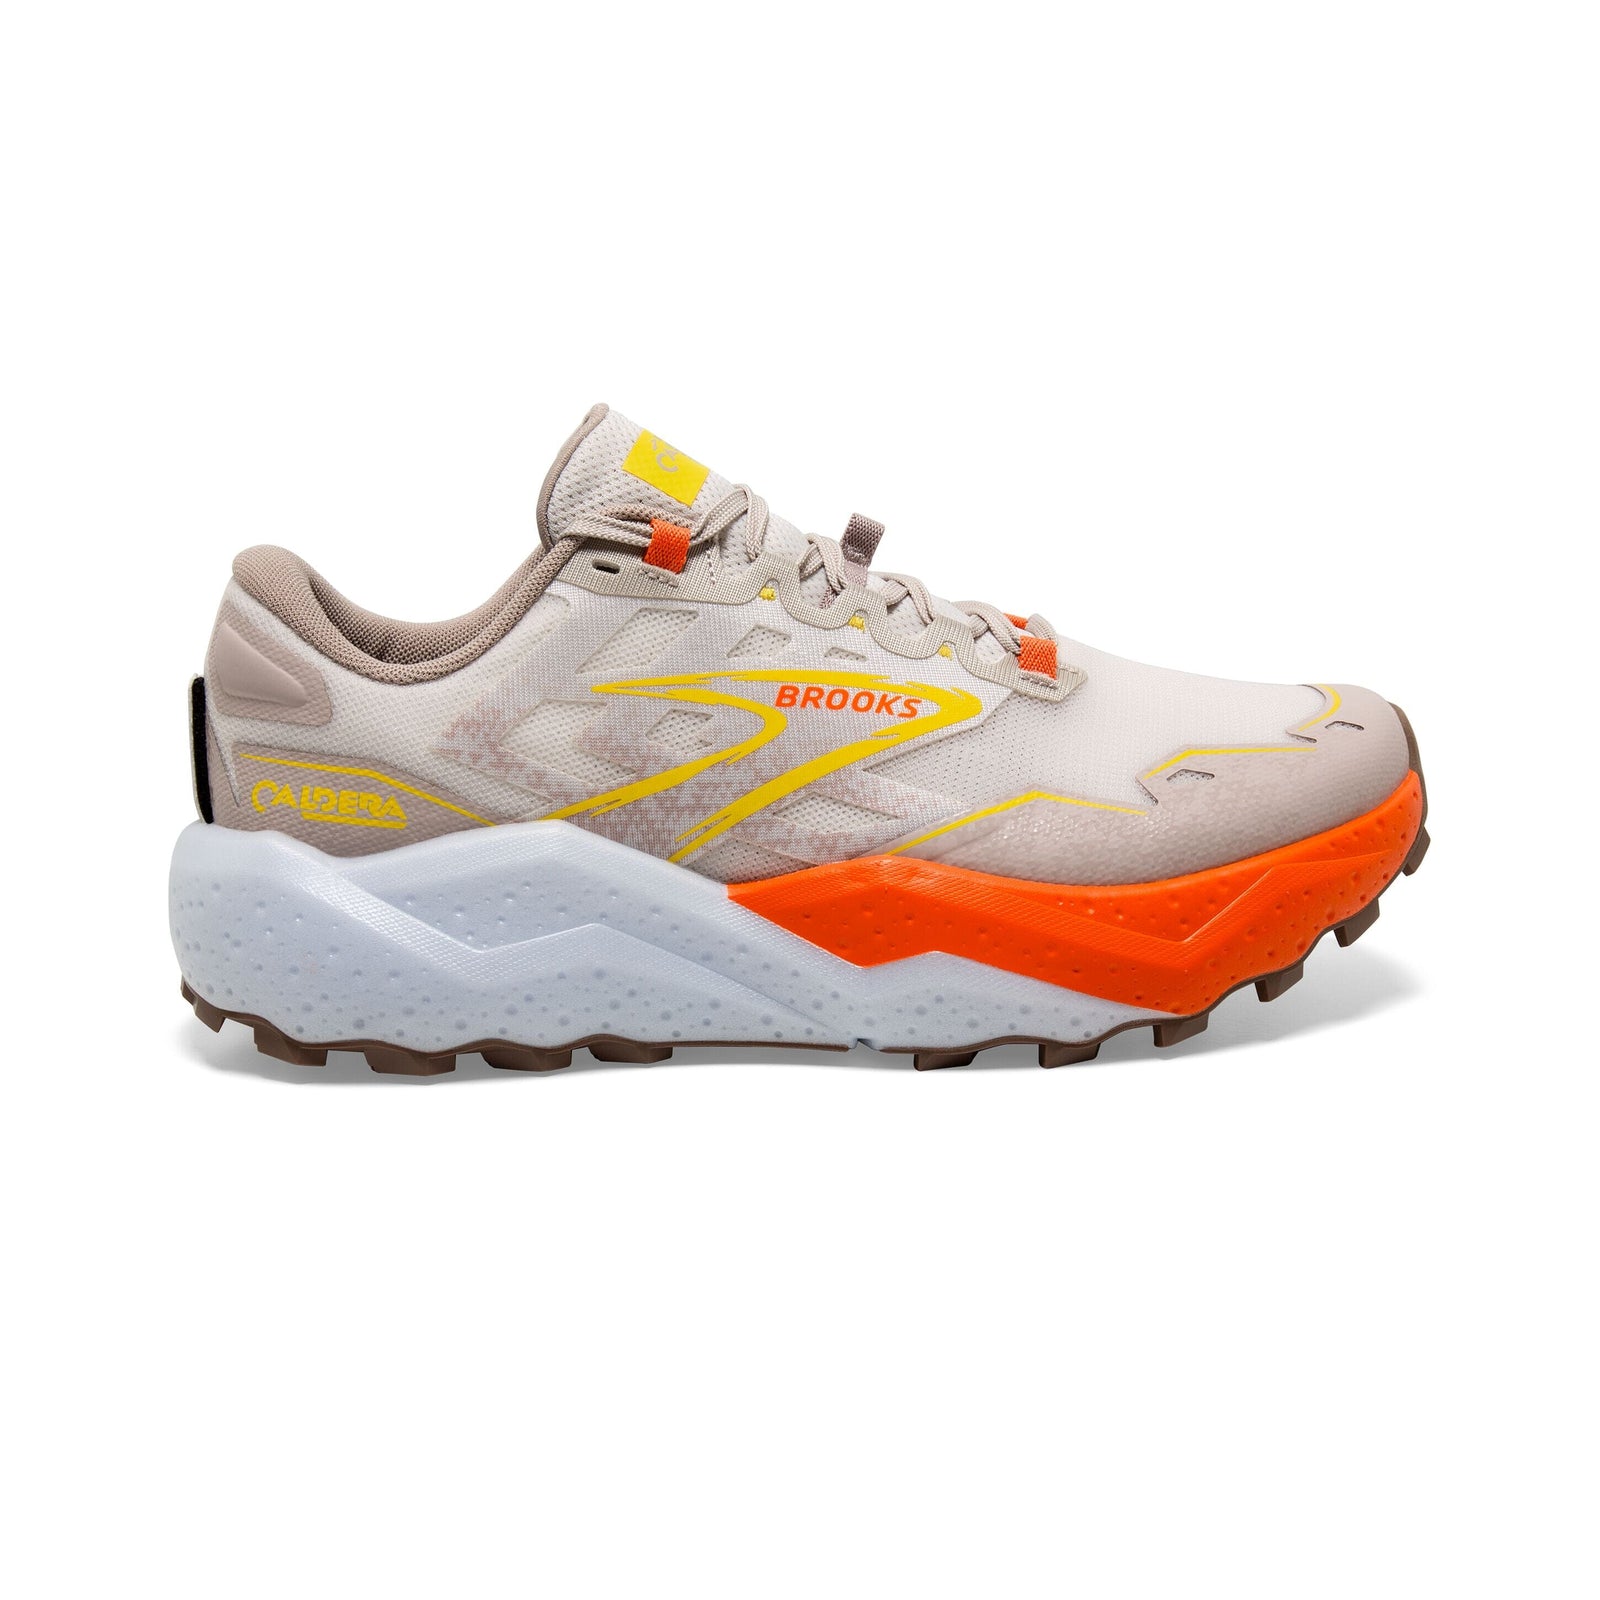 Brooks Men's Caldera 7 Trail Running Shoes White Sand/Gray/Yellow US 8.5 